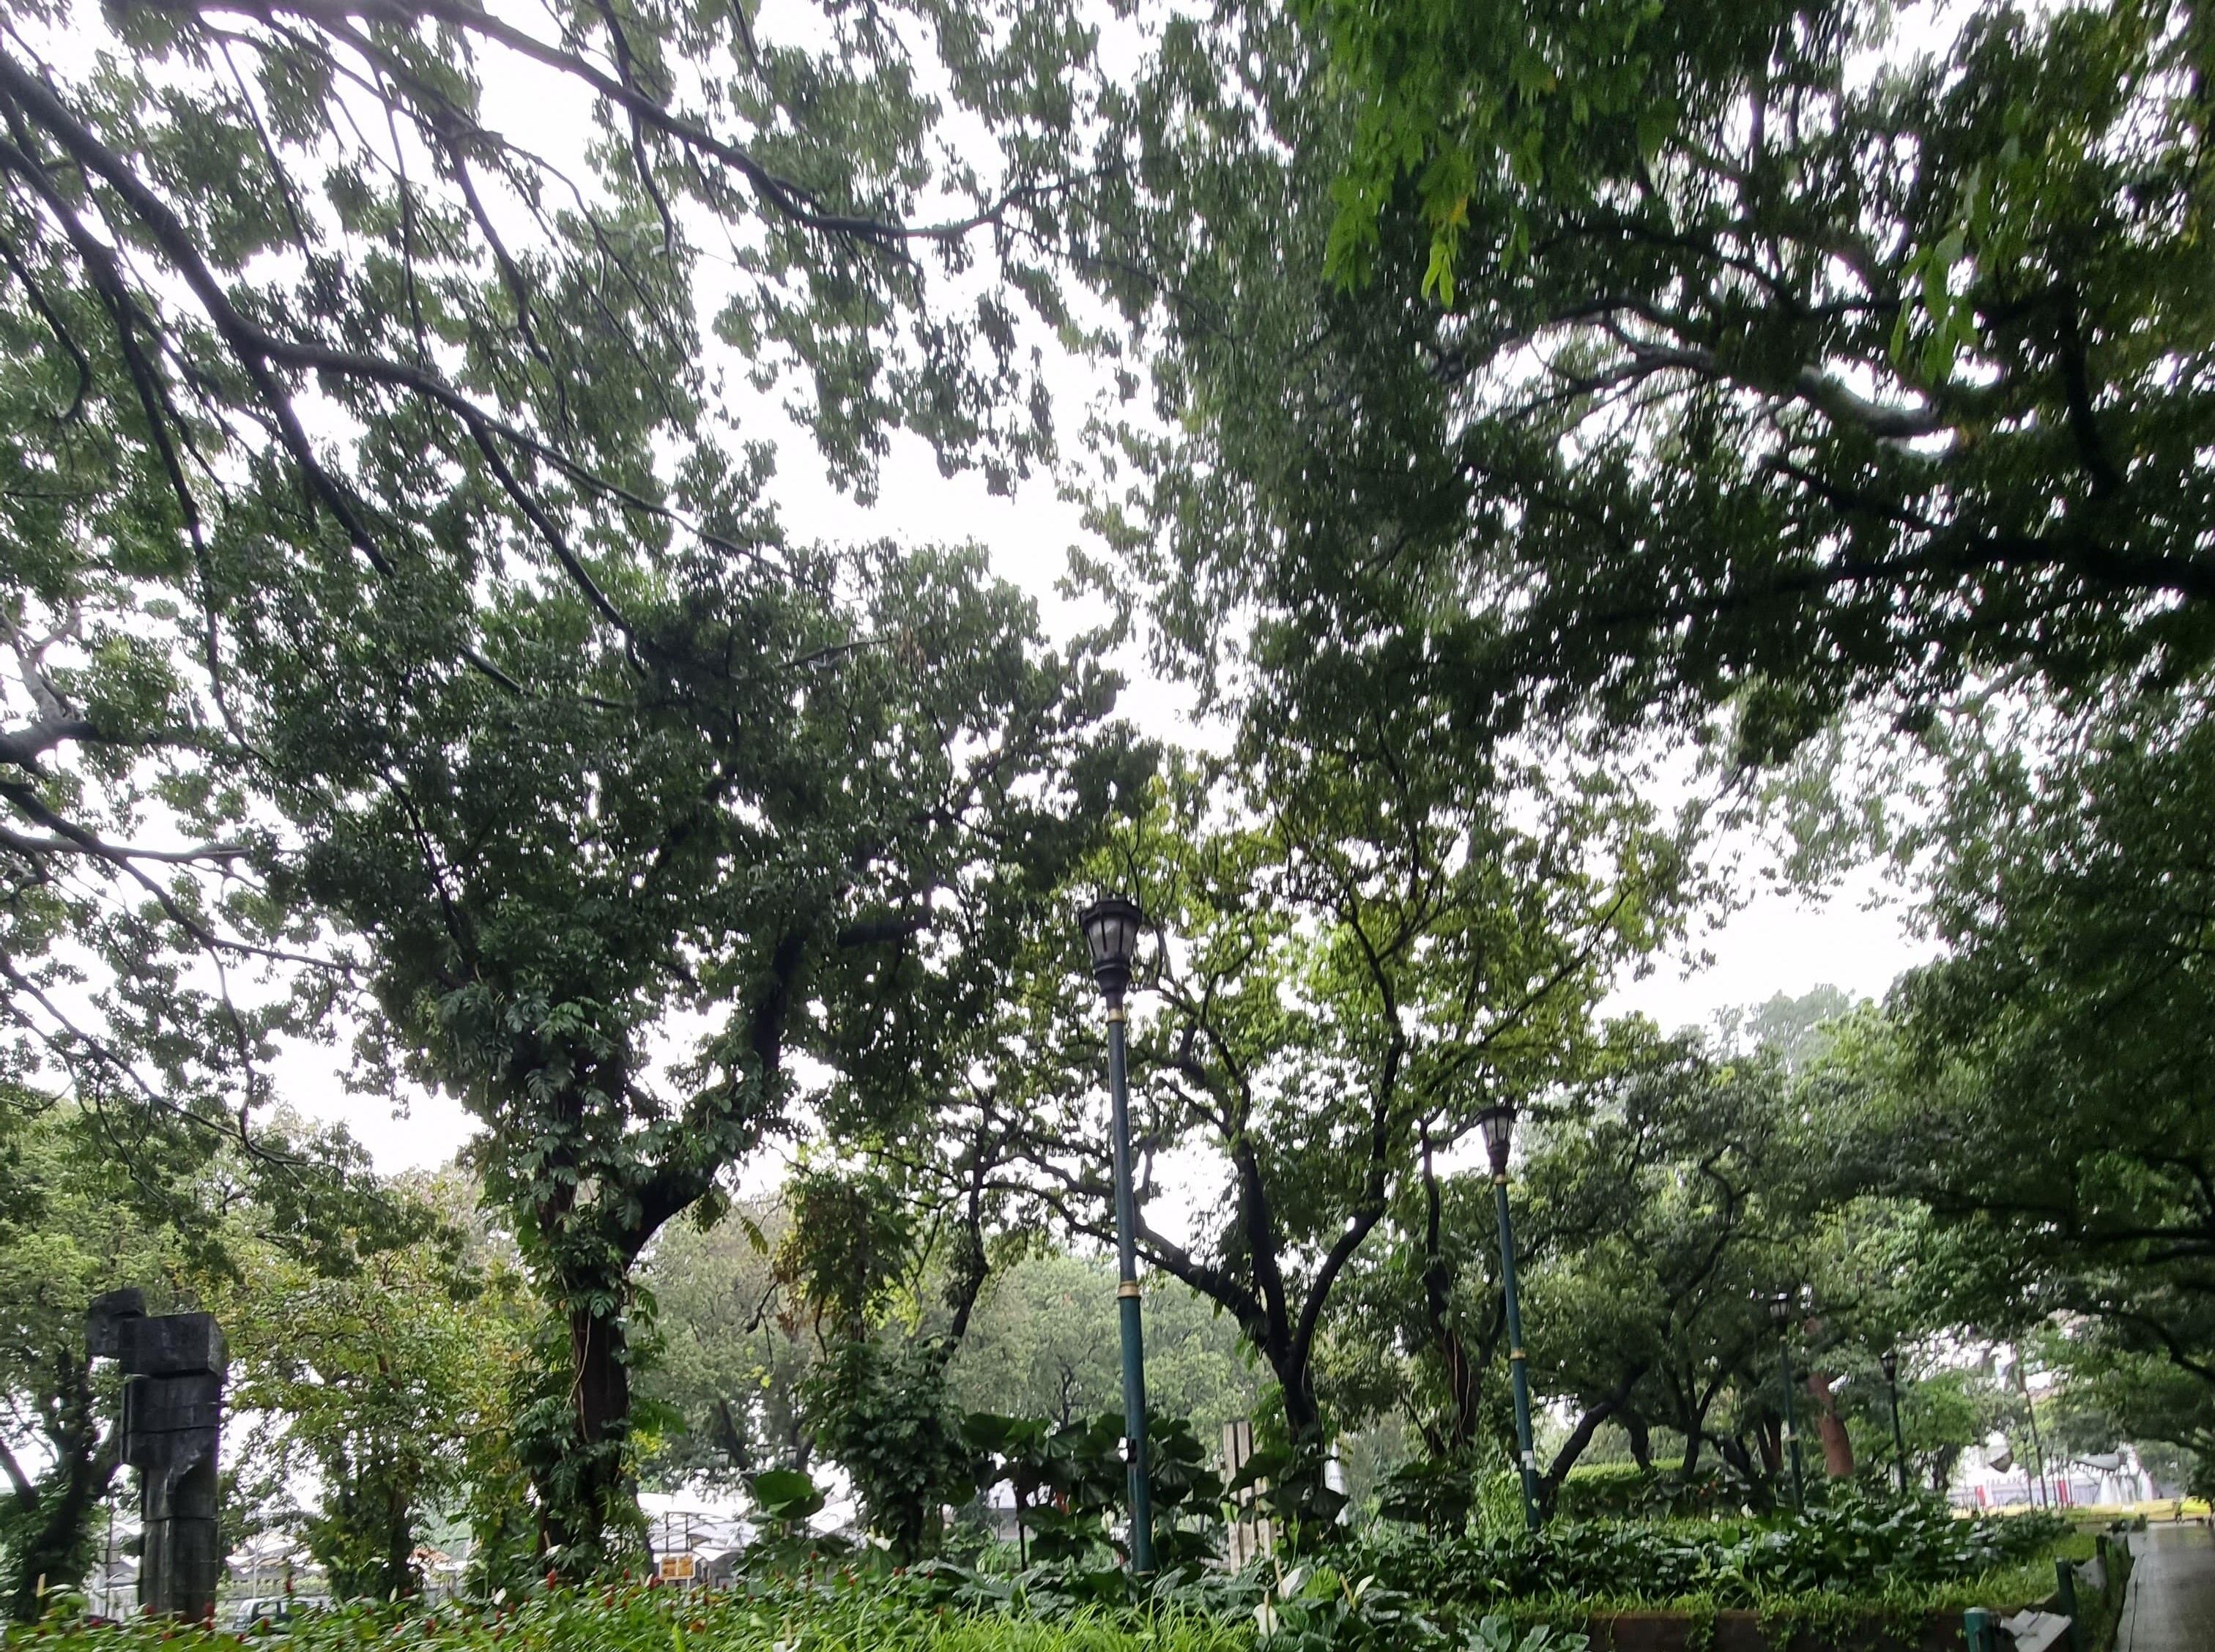 Taman Suropati, outdoor space di Jakarta Pusat, favorit mahasiswa sebagai tempat untuk healing.